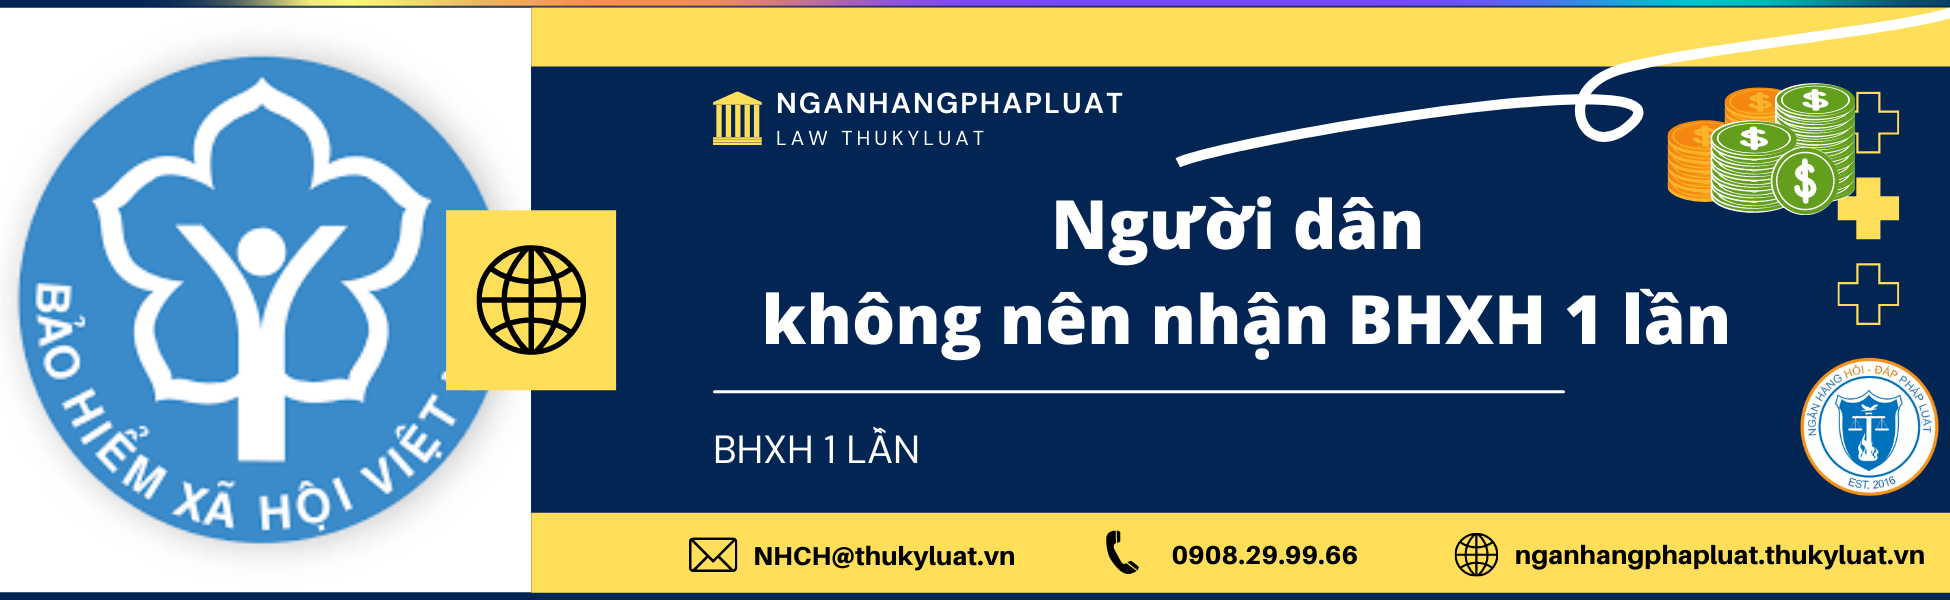 Người dân không nên nhận BHXH một lần, lời khuyên từ cơ quan BHXH Việt Nam